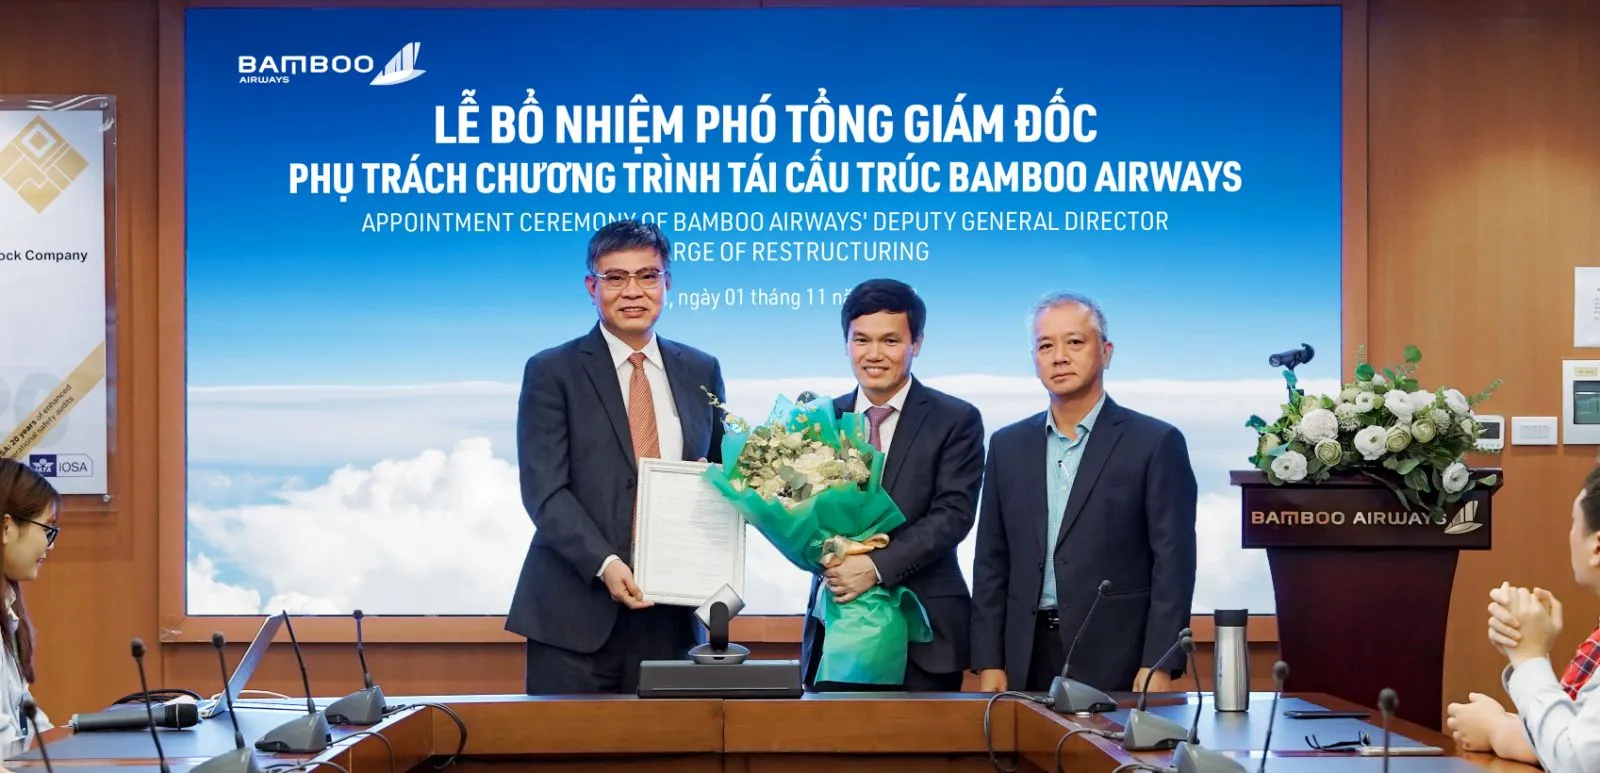 Ông Nguyễn Thượng Hoàng Hải (ở giữa), nhận Nghị quyết bổ nhiệm từ Ông Phan Đình Tuệ - Phó CTTT HĐQT Bamboo Airways (bên phải) và Ông Lương Hoài Nam – TGĐ Bamboo Airways (bên trái). 